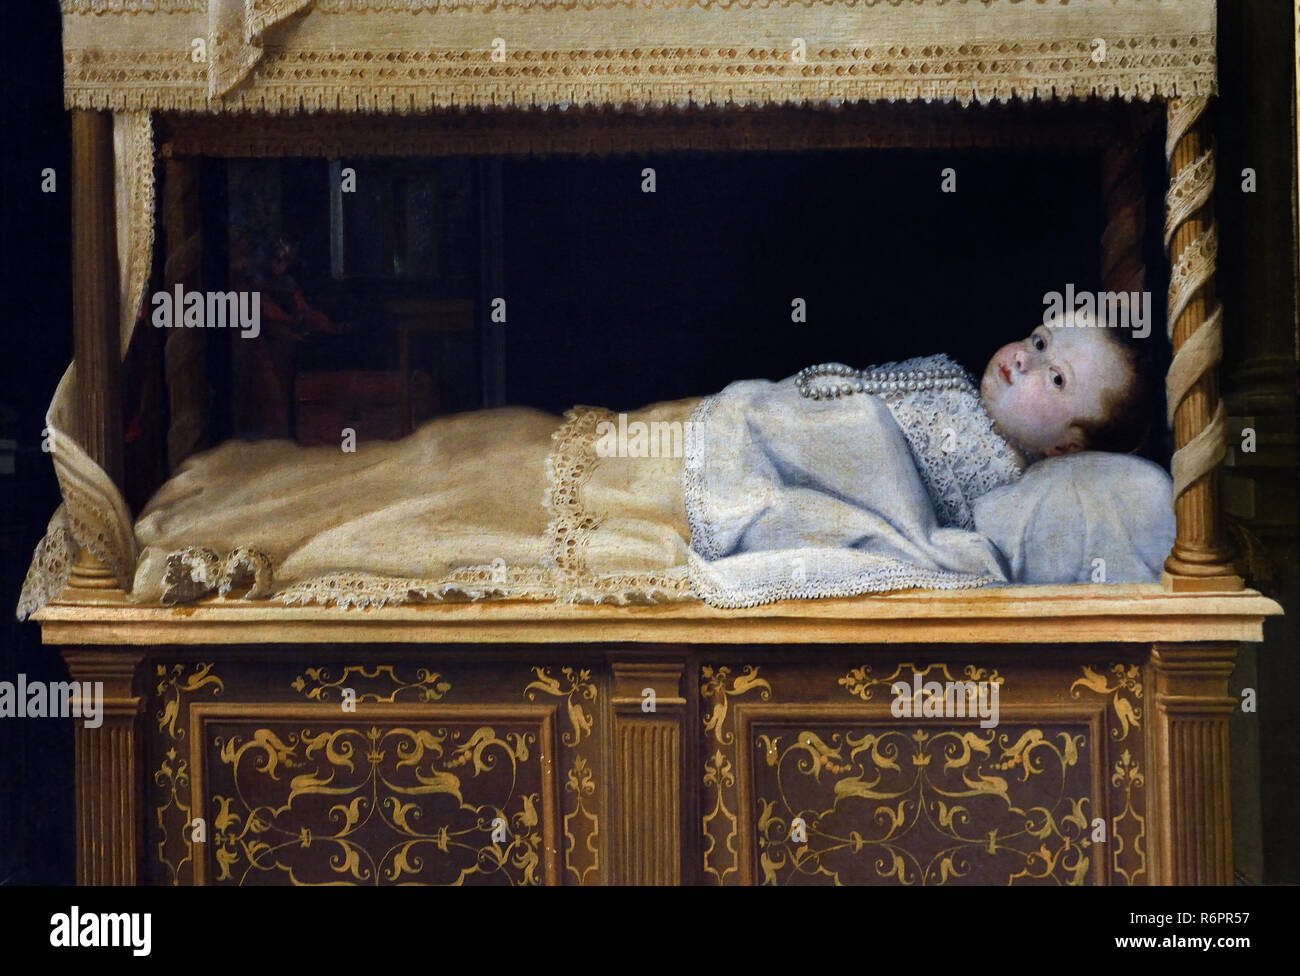 Enfant couché dans un berceau par Prospero Fontana (1512-1597) Italie italien du 16e siècle Banque D'Images